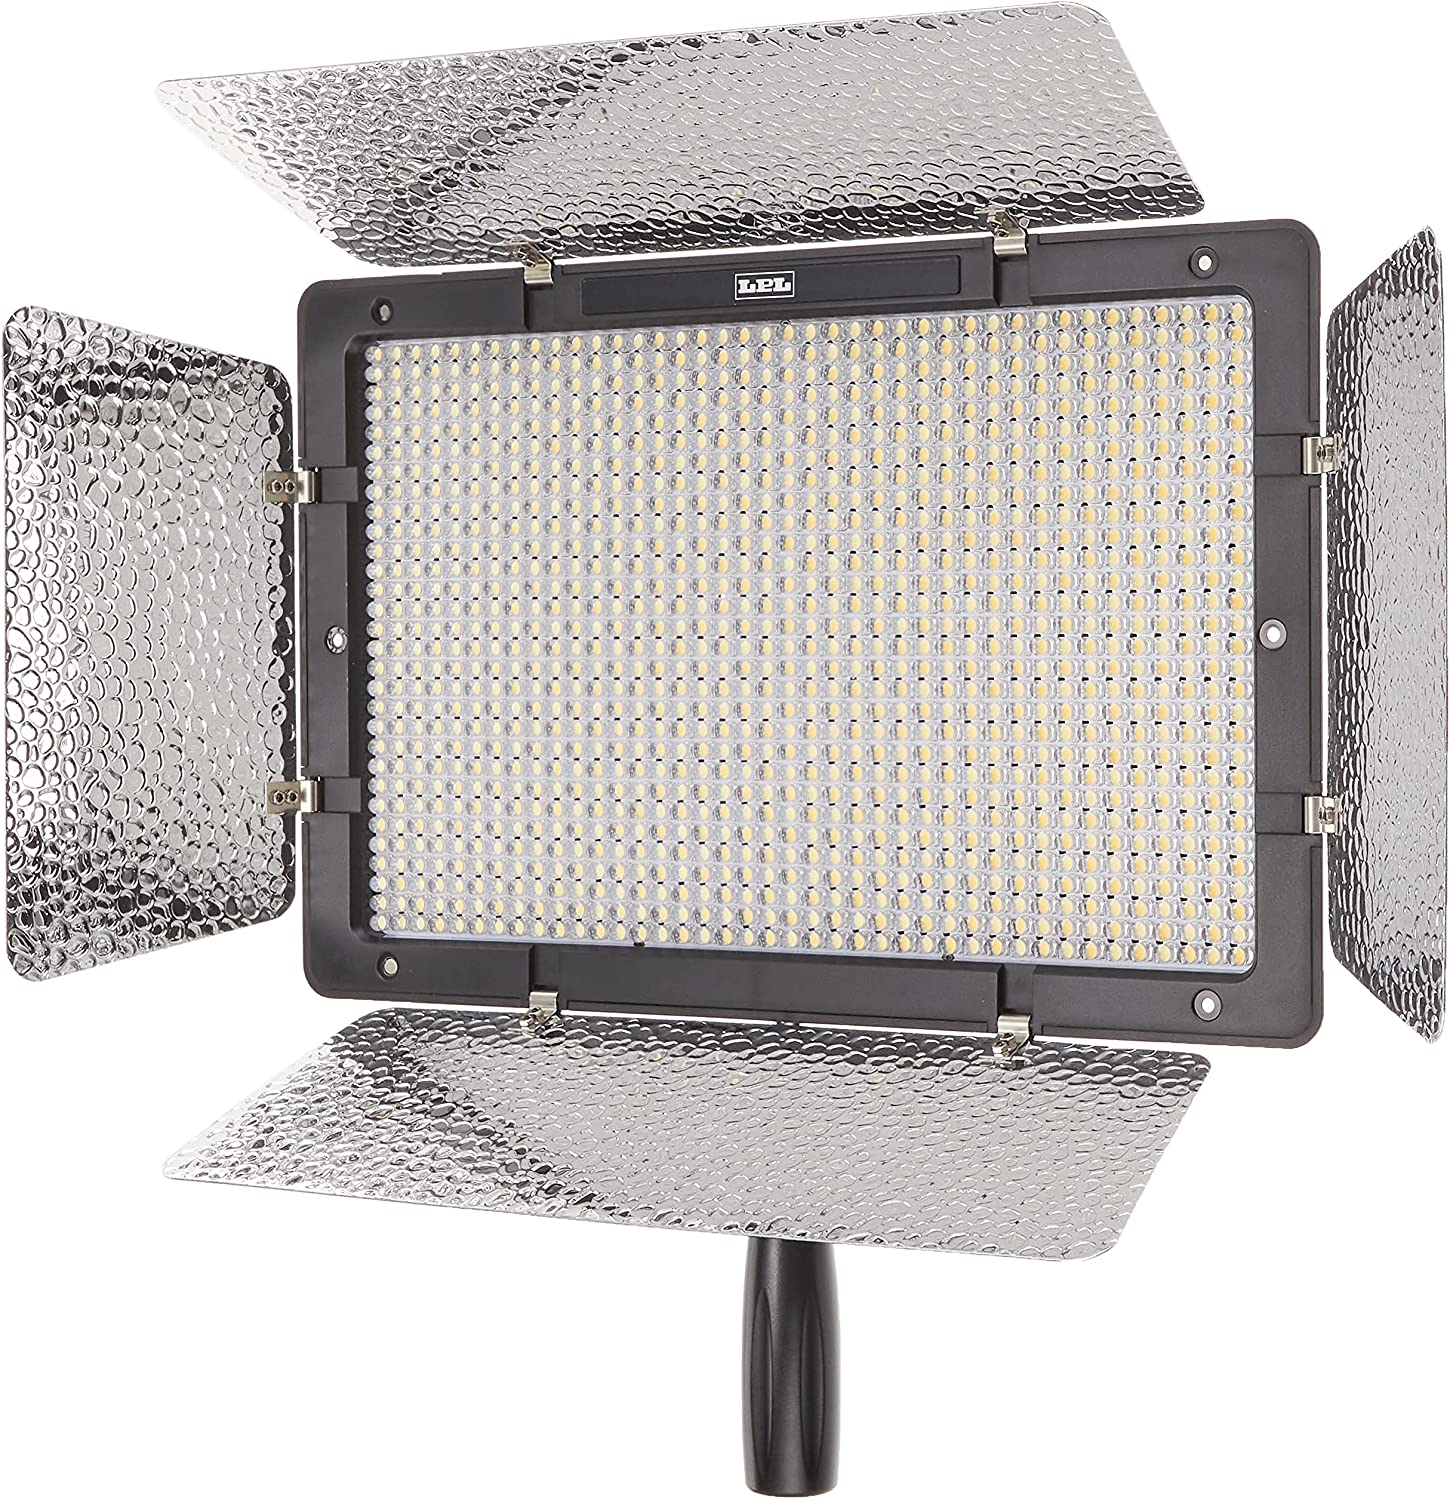 LEDライトプロ VLP-12500XP